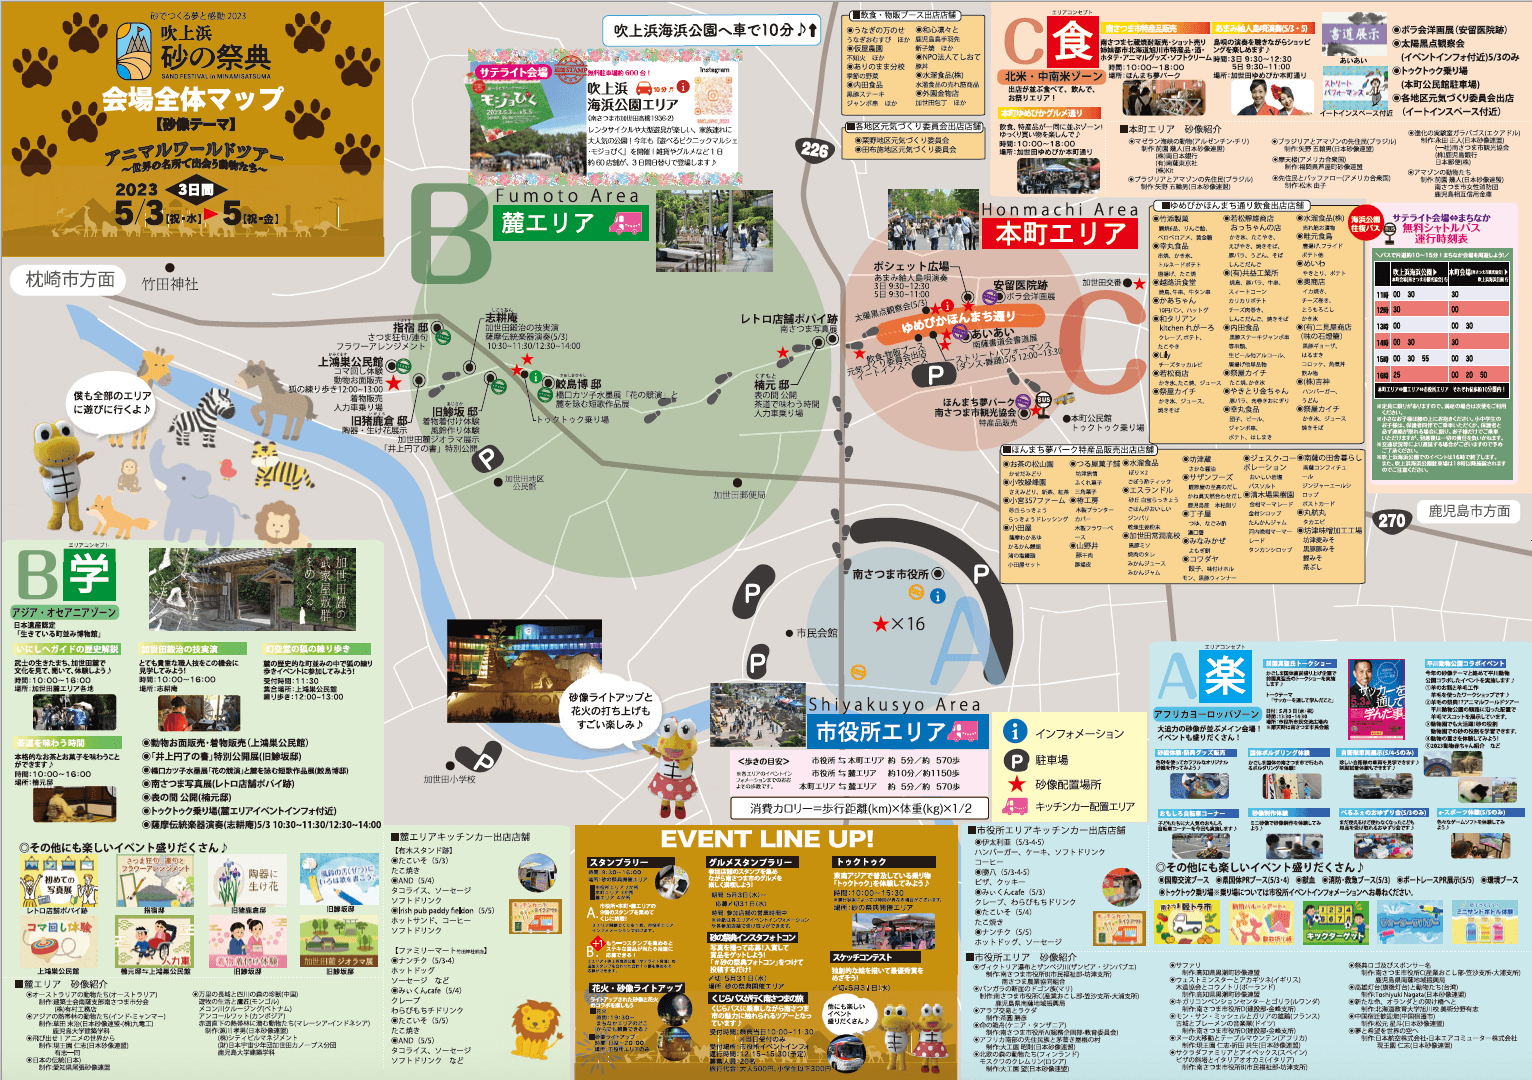 2023-sand-minamisatsuma-map.png